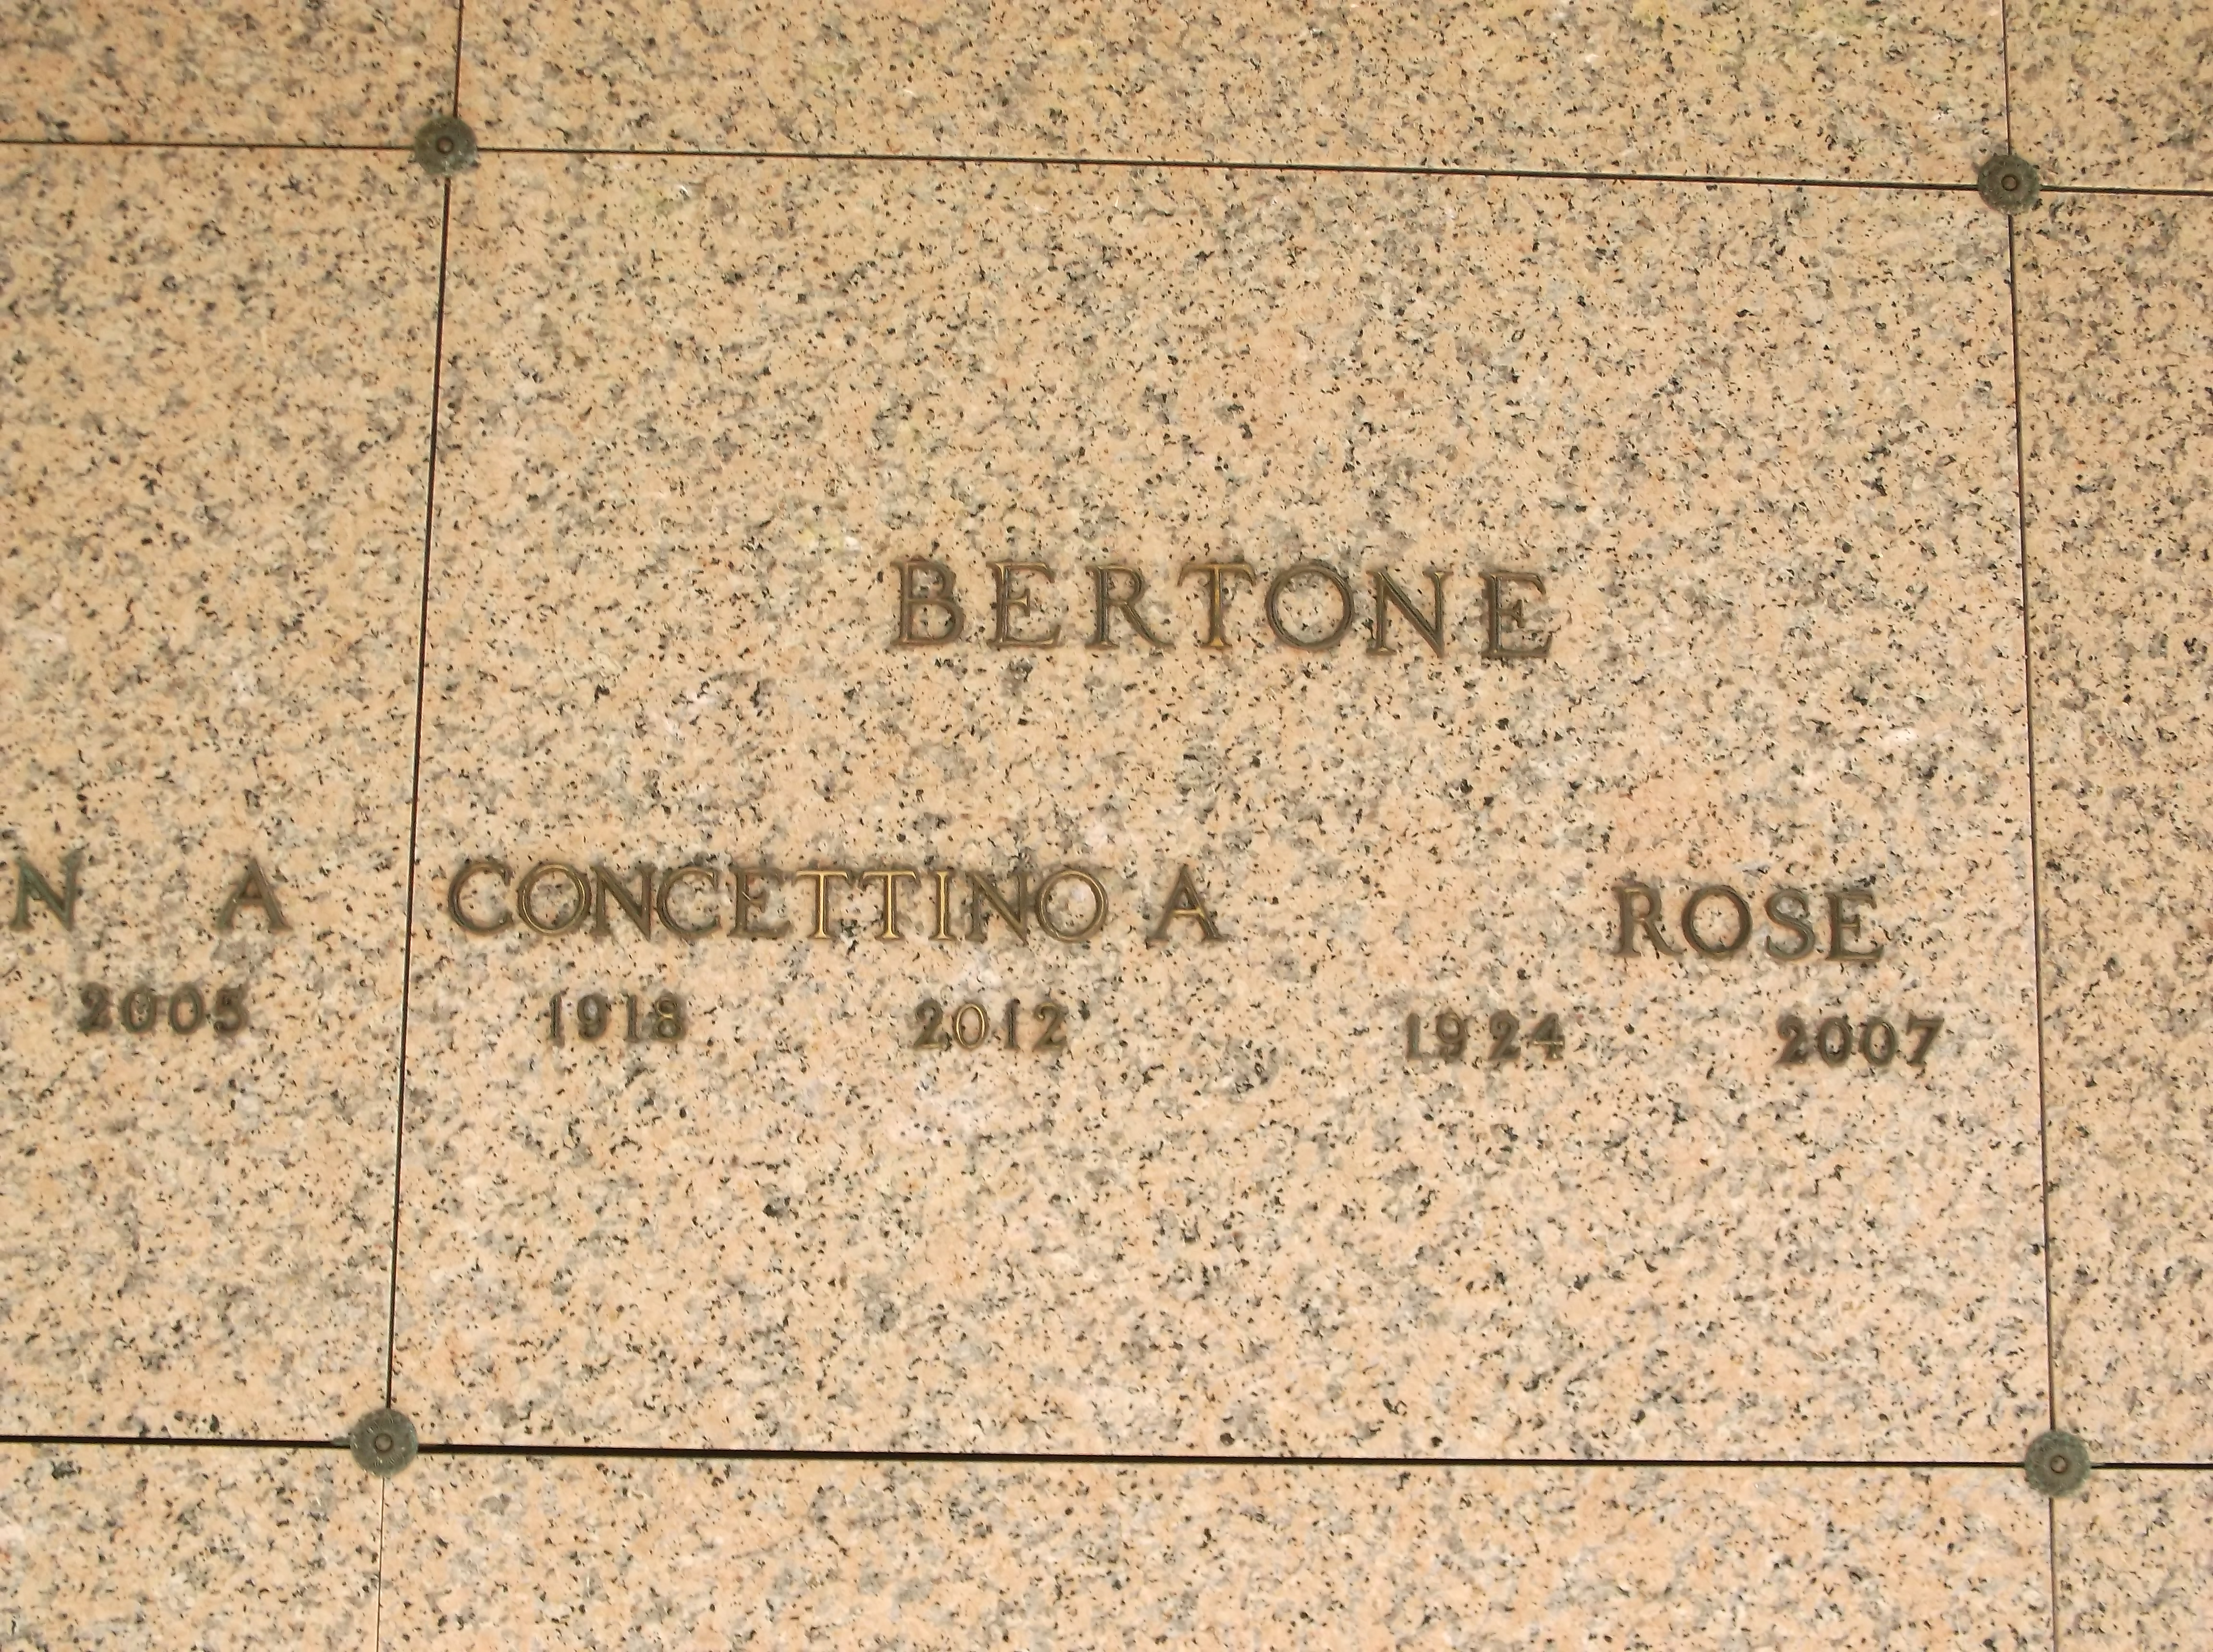 Rose Bertone